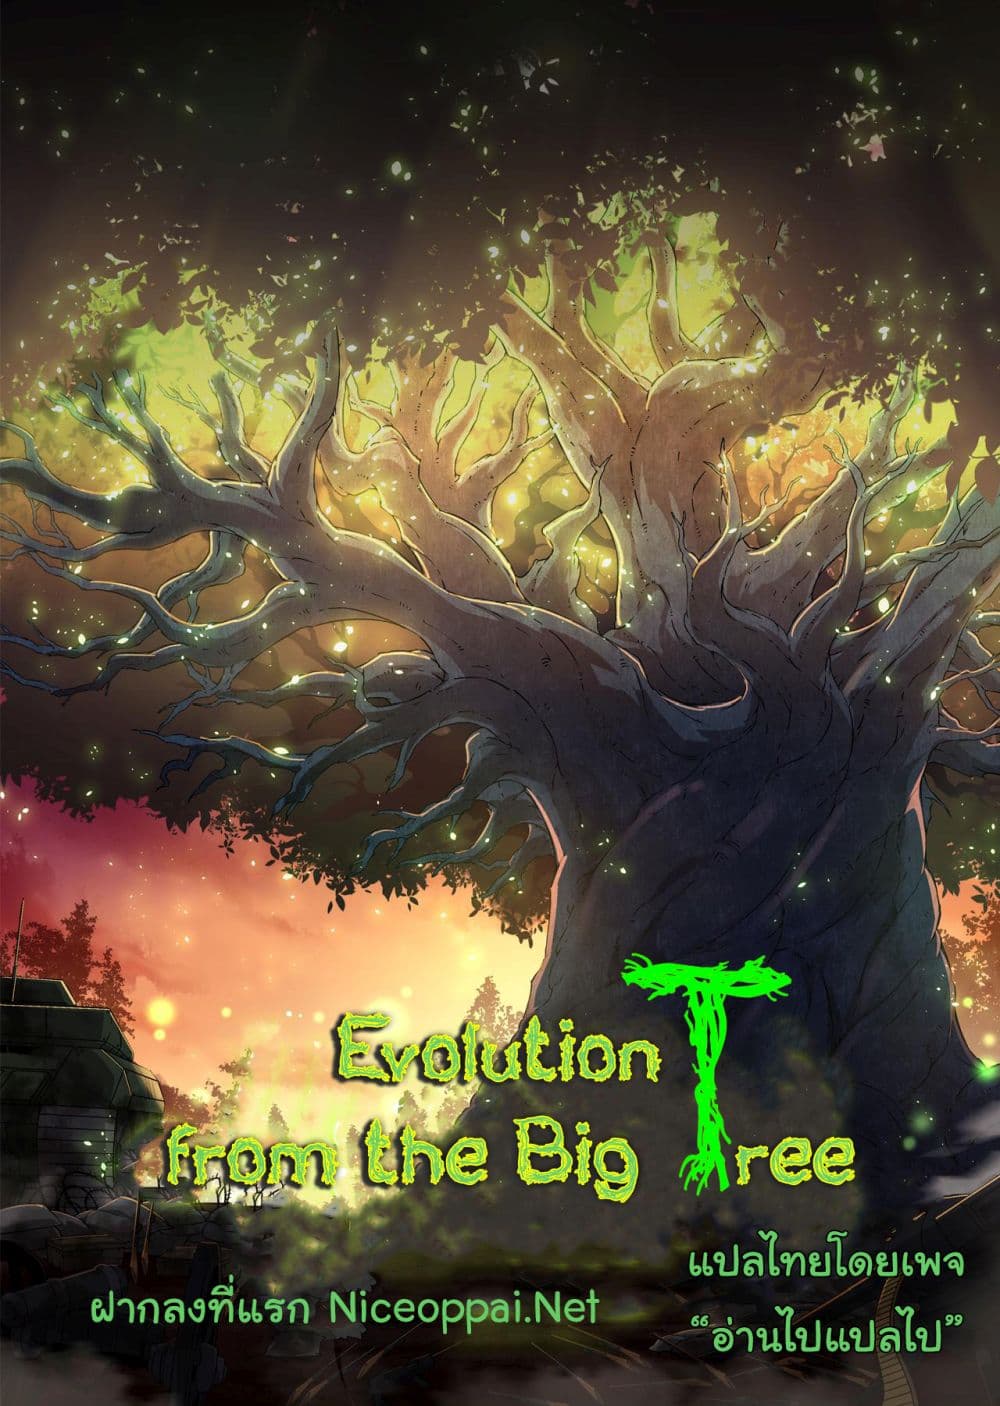 Evolution from the Big Tree Ã Â¸â€¢Ã Â¸Â­Ã Â¸â„¢Ã Â¸â€”Ã Â¸ÂµÃ Â¹Ë† 29 (45)